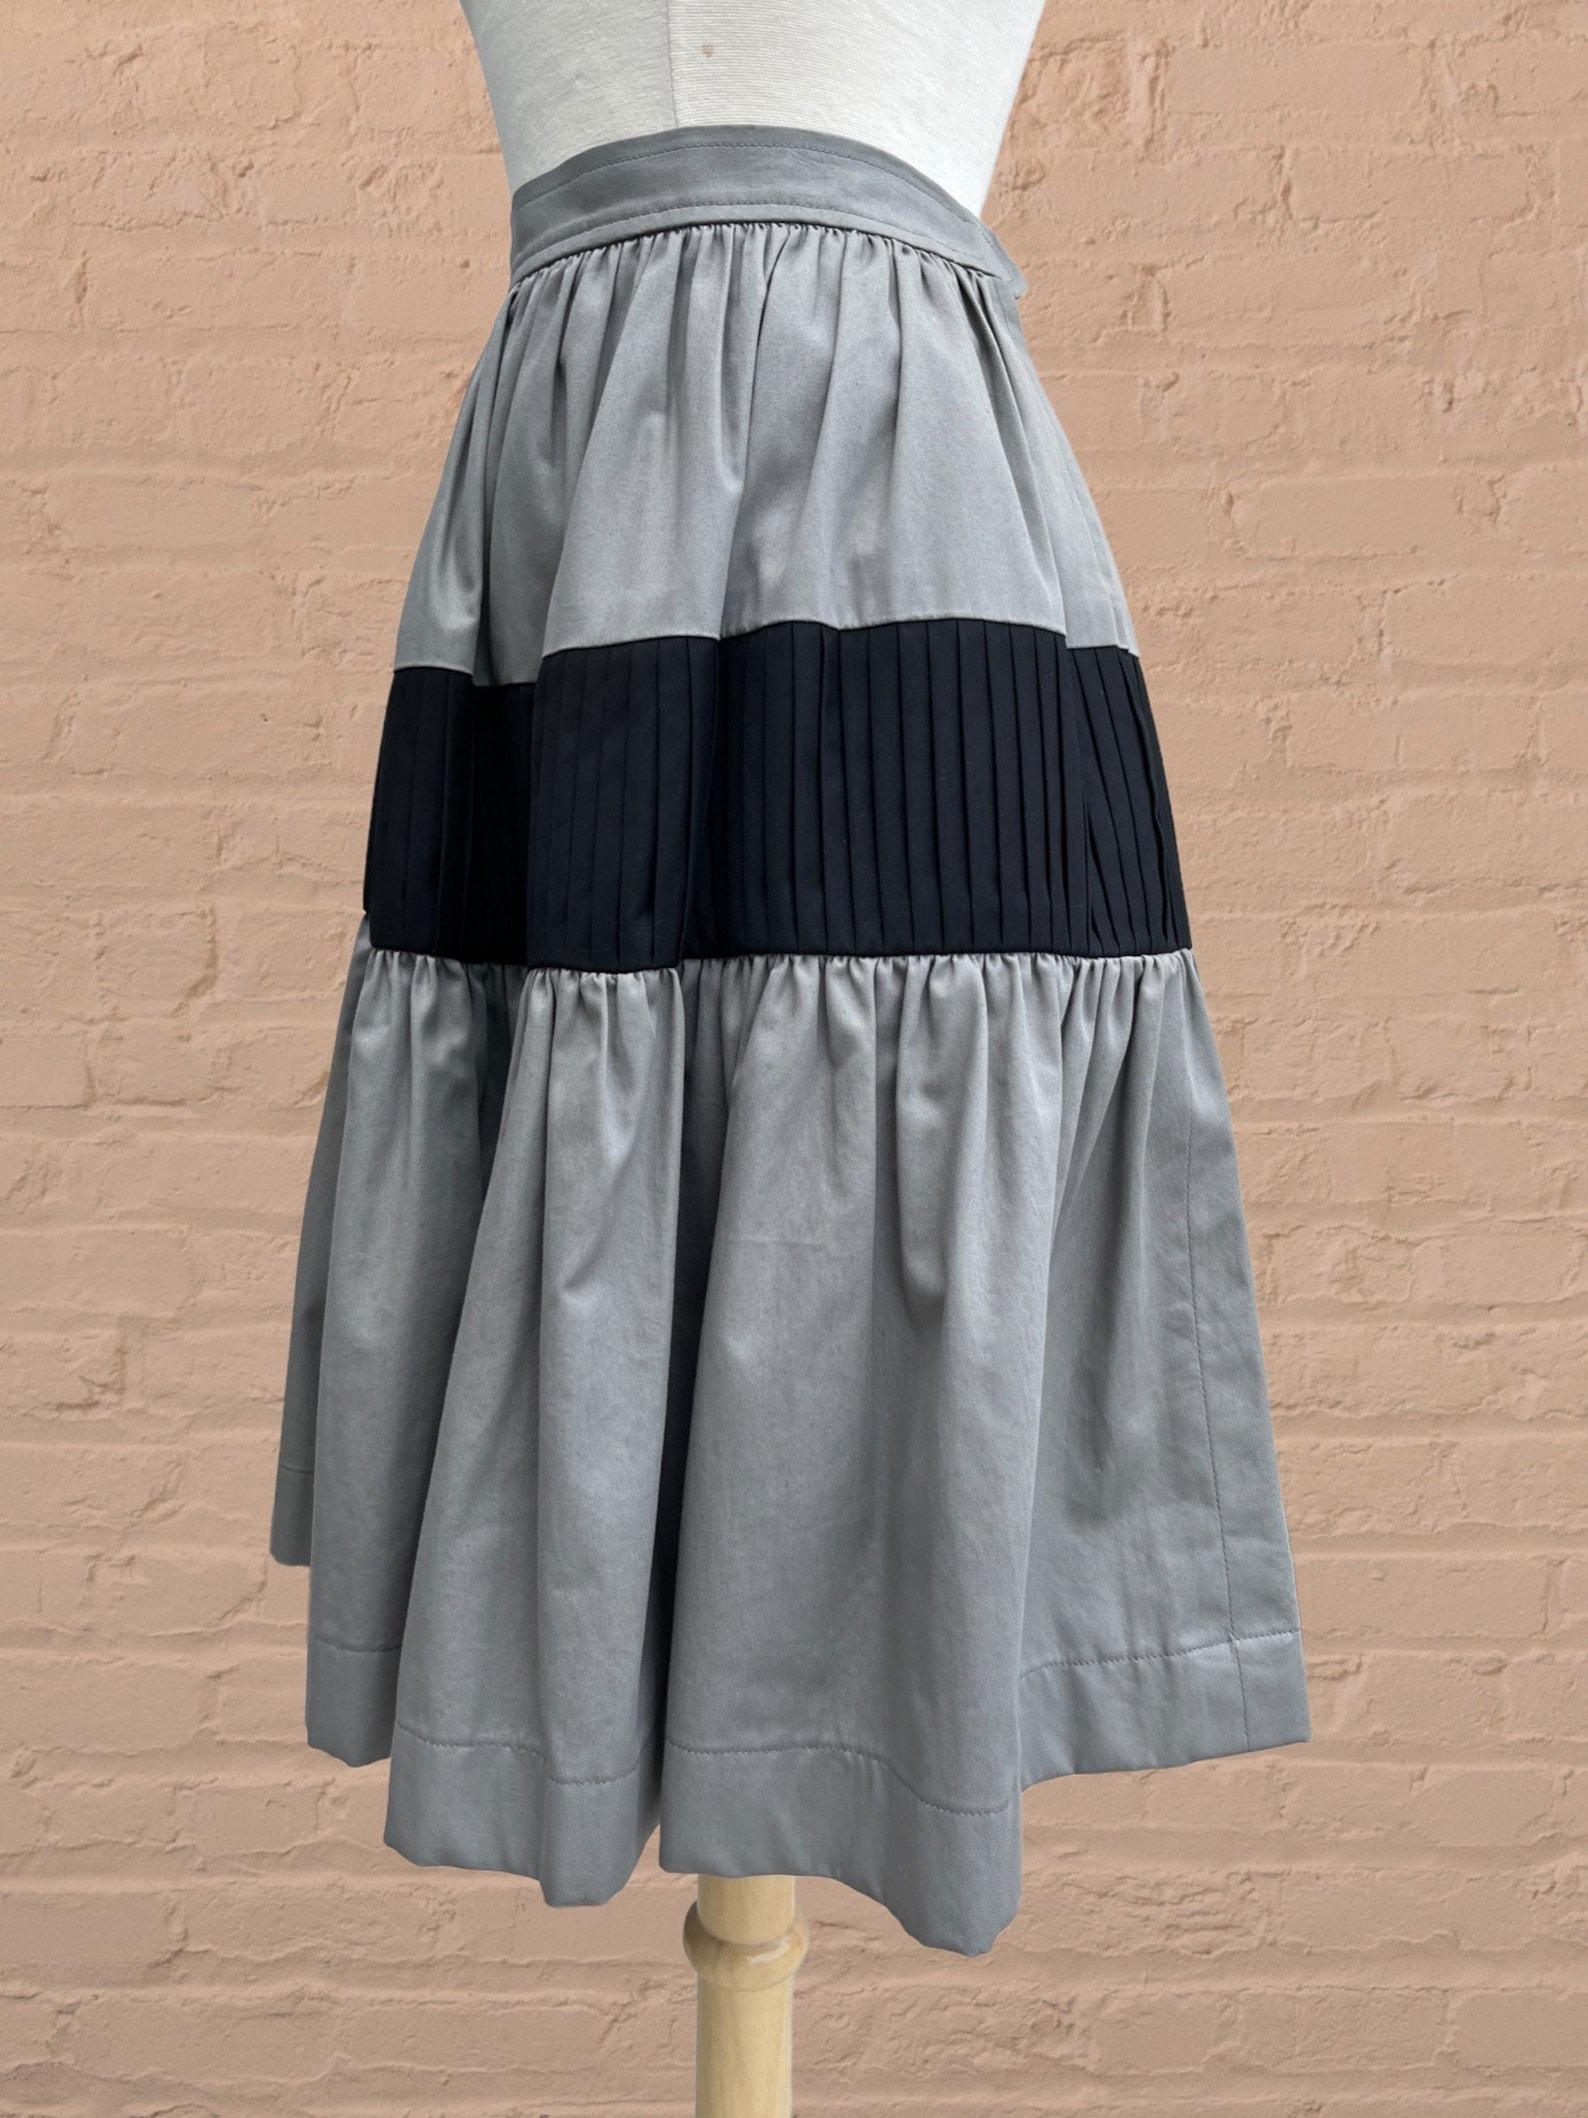 Women's Yves Saint Laurent colorblock skirt For Sale